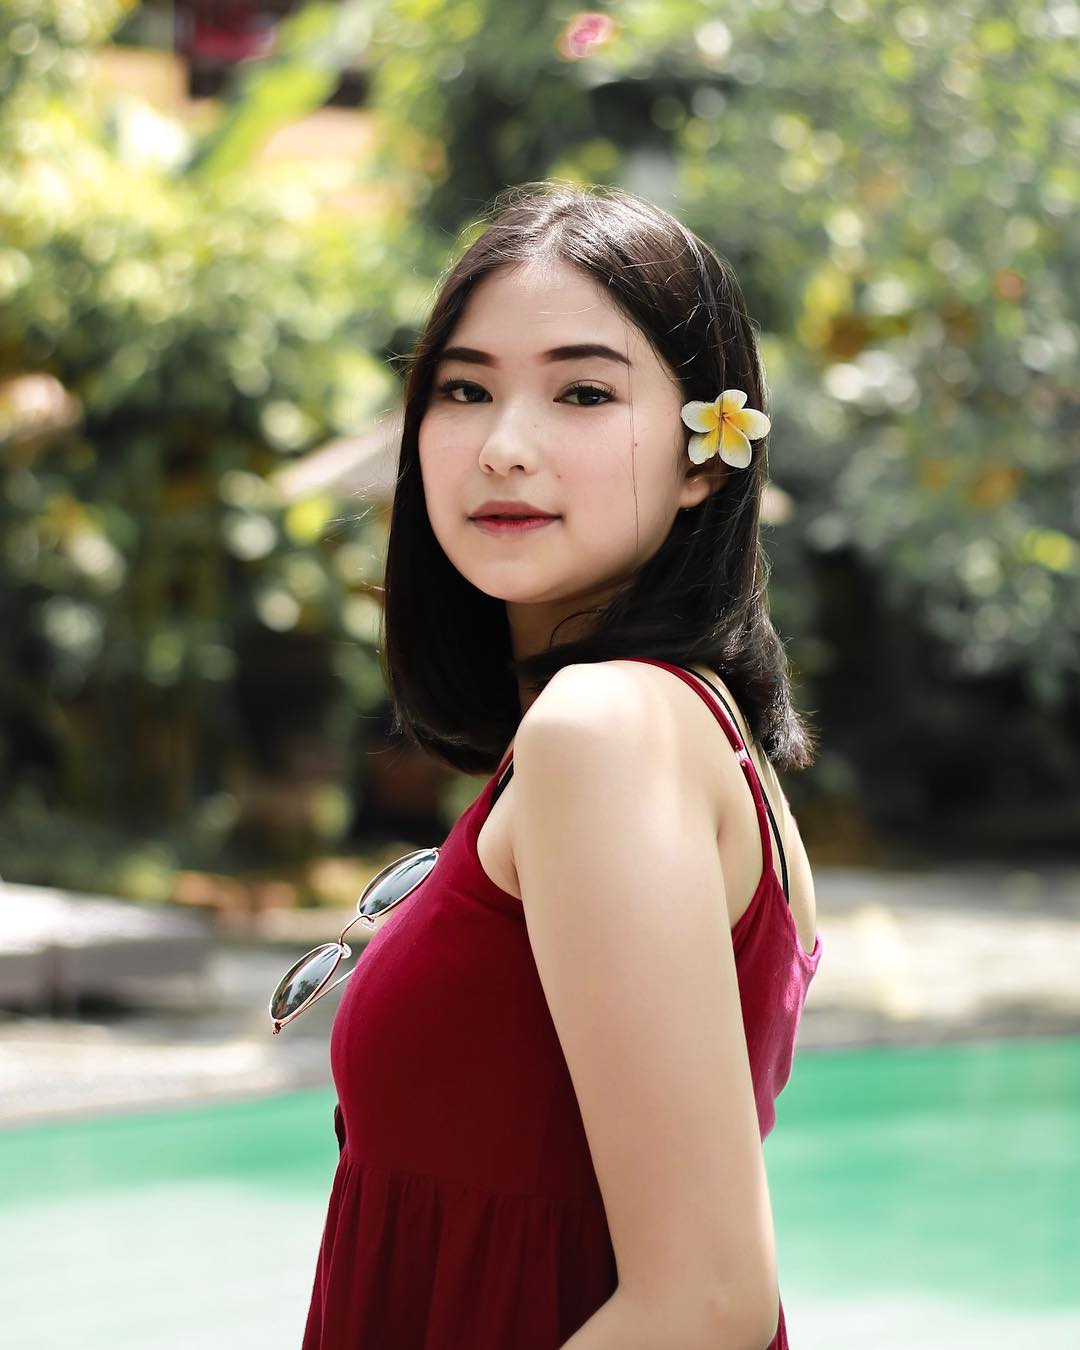 Putry Jeje, Model dan Selebgram Berpenampilan Anggun